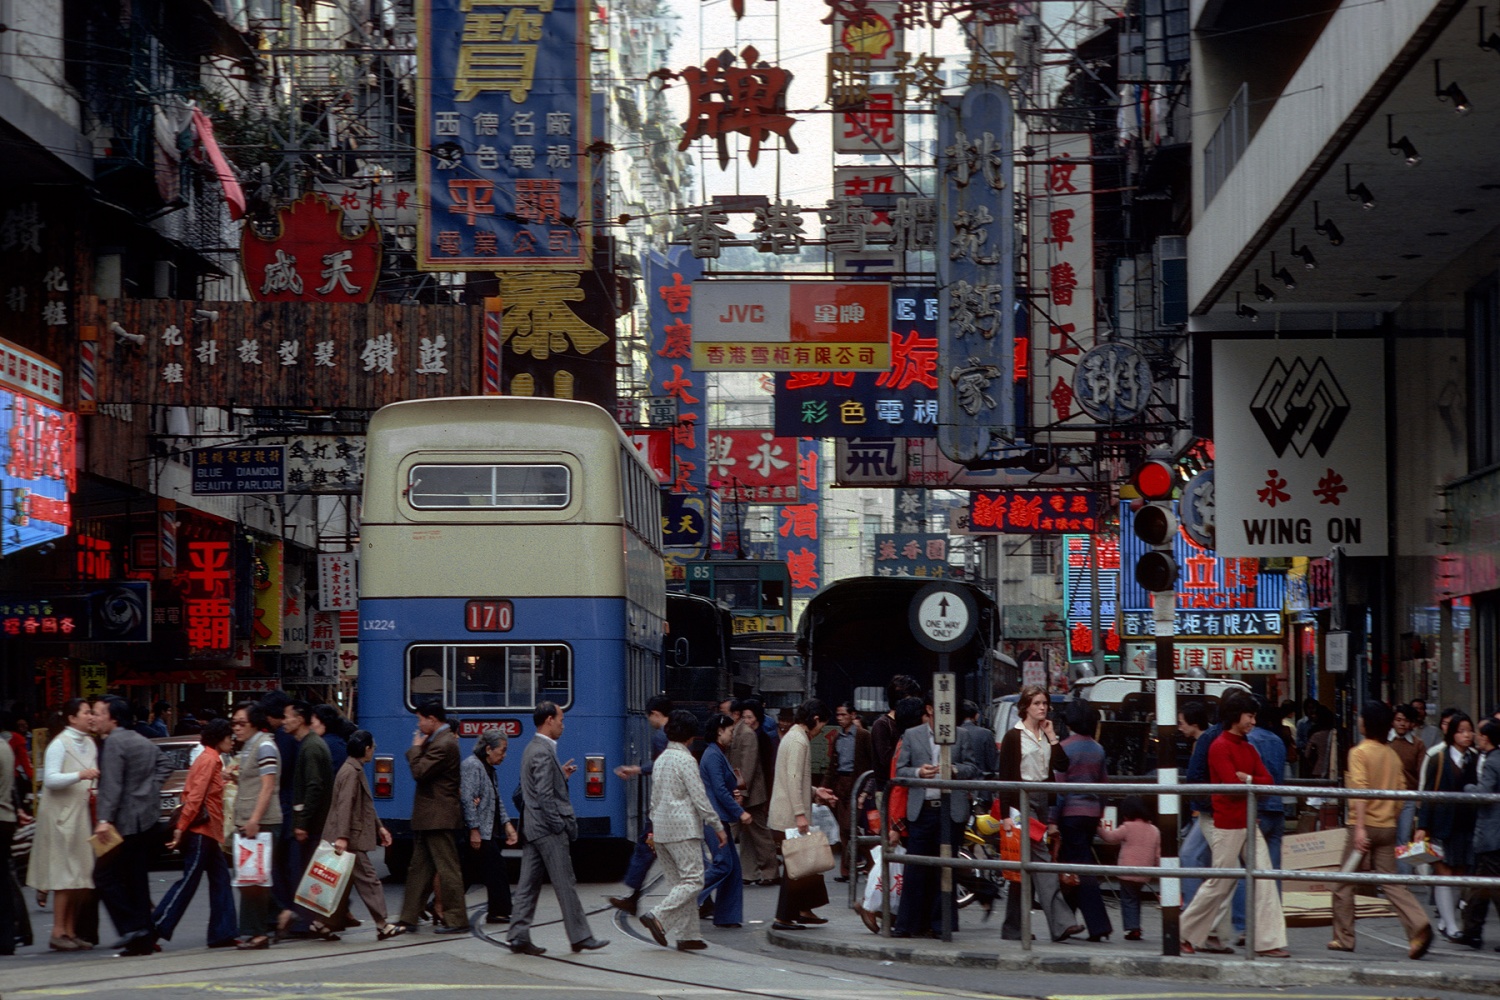 bill-hocker-percival-street-causeway-bay-hong-kong-1979